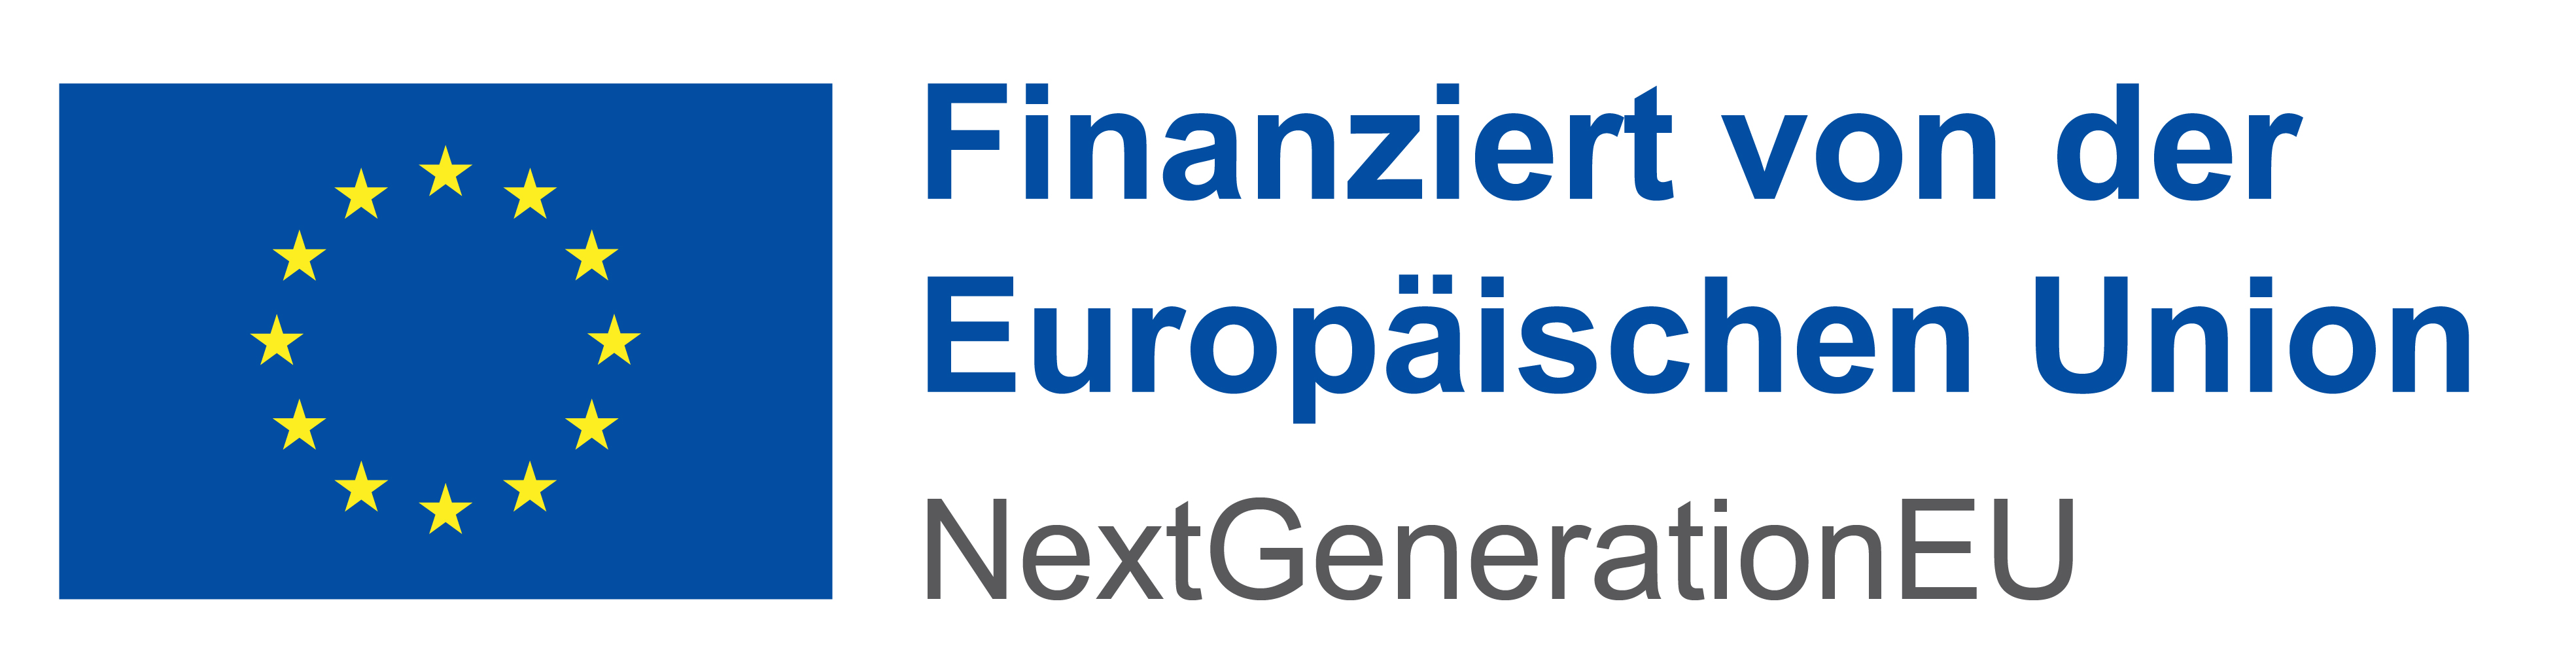 Logo zur Finanzierung durch die Europäische Union